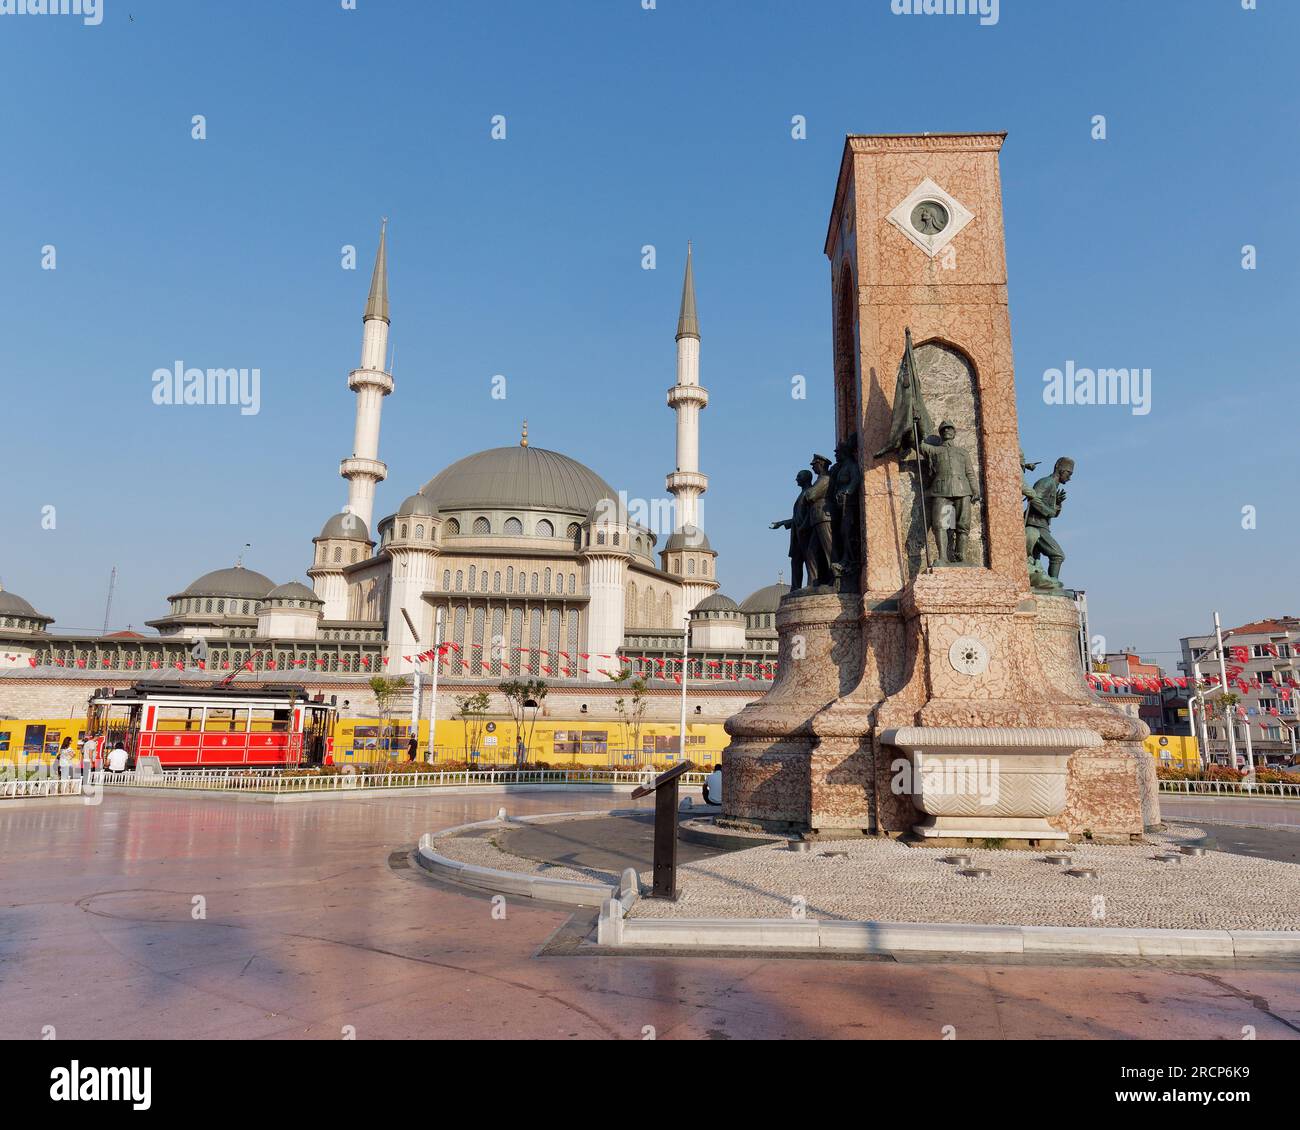 Taksim-Platz an einem Sommermorgen mit dem Denkmal der Republik, der Taksim-Moschee und der Heritage Tram, Beyoğlu, Istanbul, Türkei Stockfoto